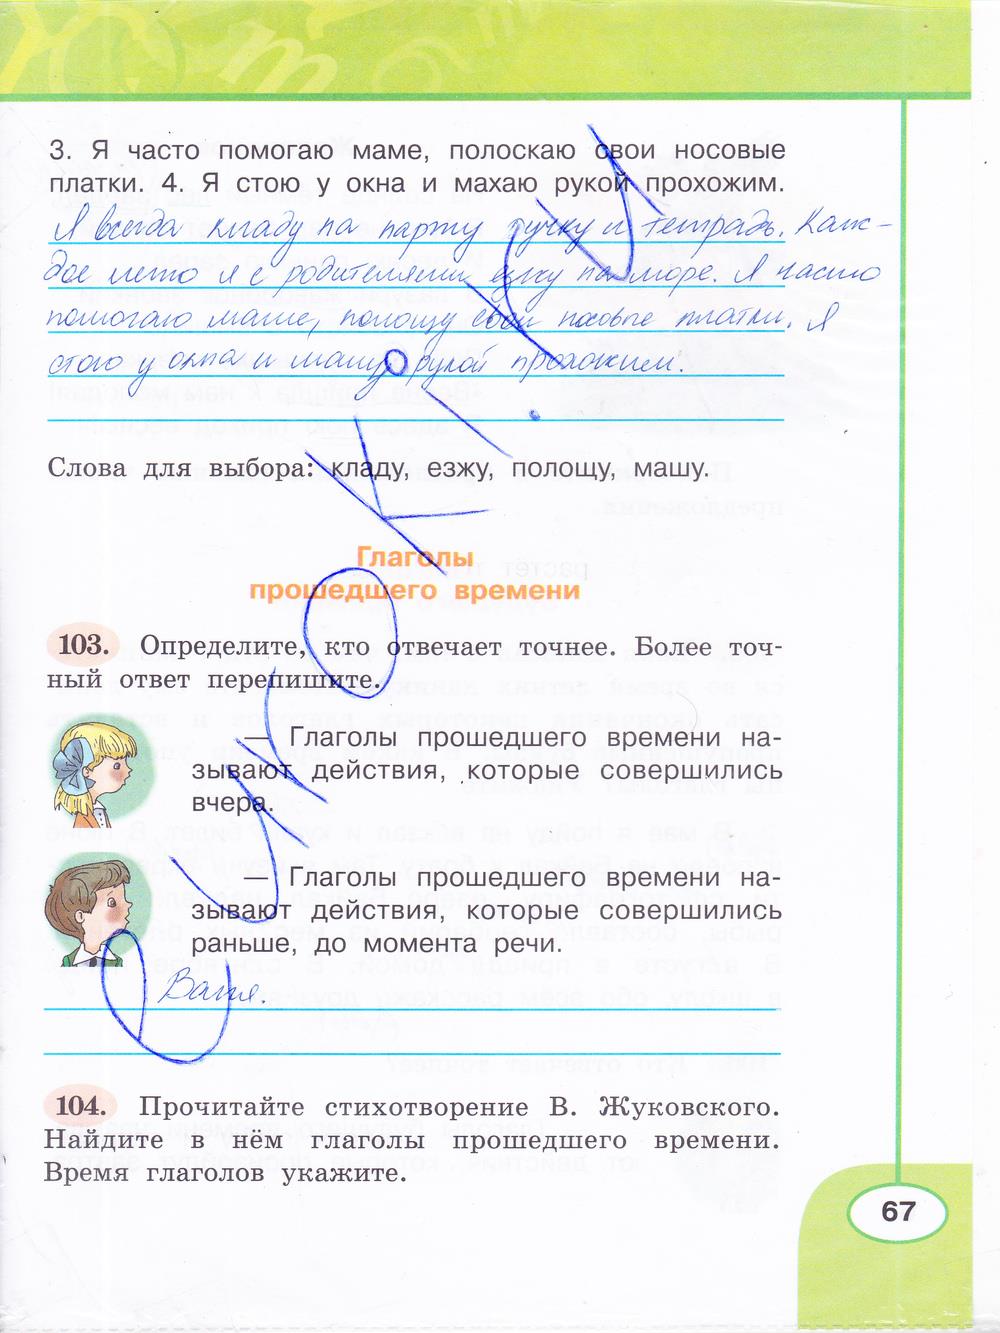 гдз 3 класс рабочая тетрадь часть 2 страница 67 русский язык Климанова, Бабушкина